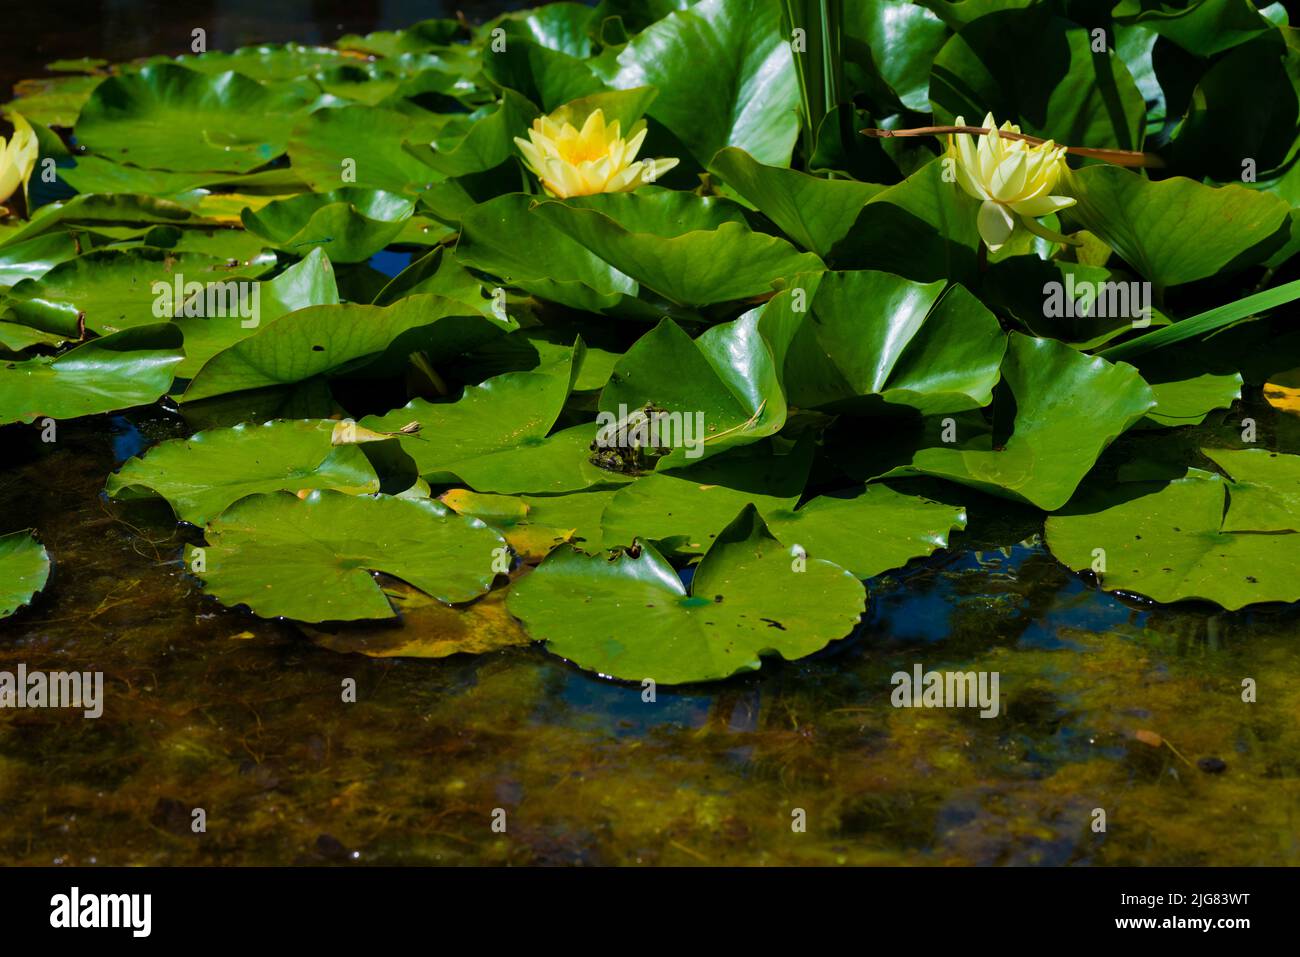 Fiori di giglio d'acqua con foglie verdi in un laghetto, una rana verde seduta al sole su una foglia Foto Stock